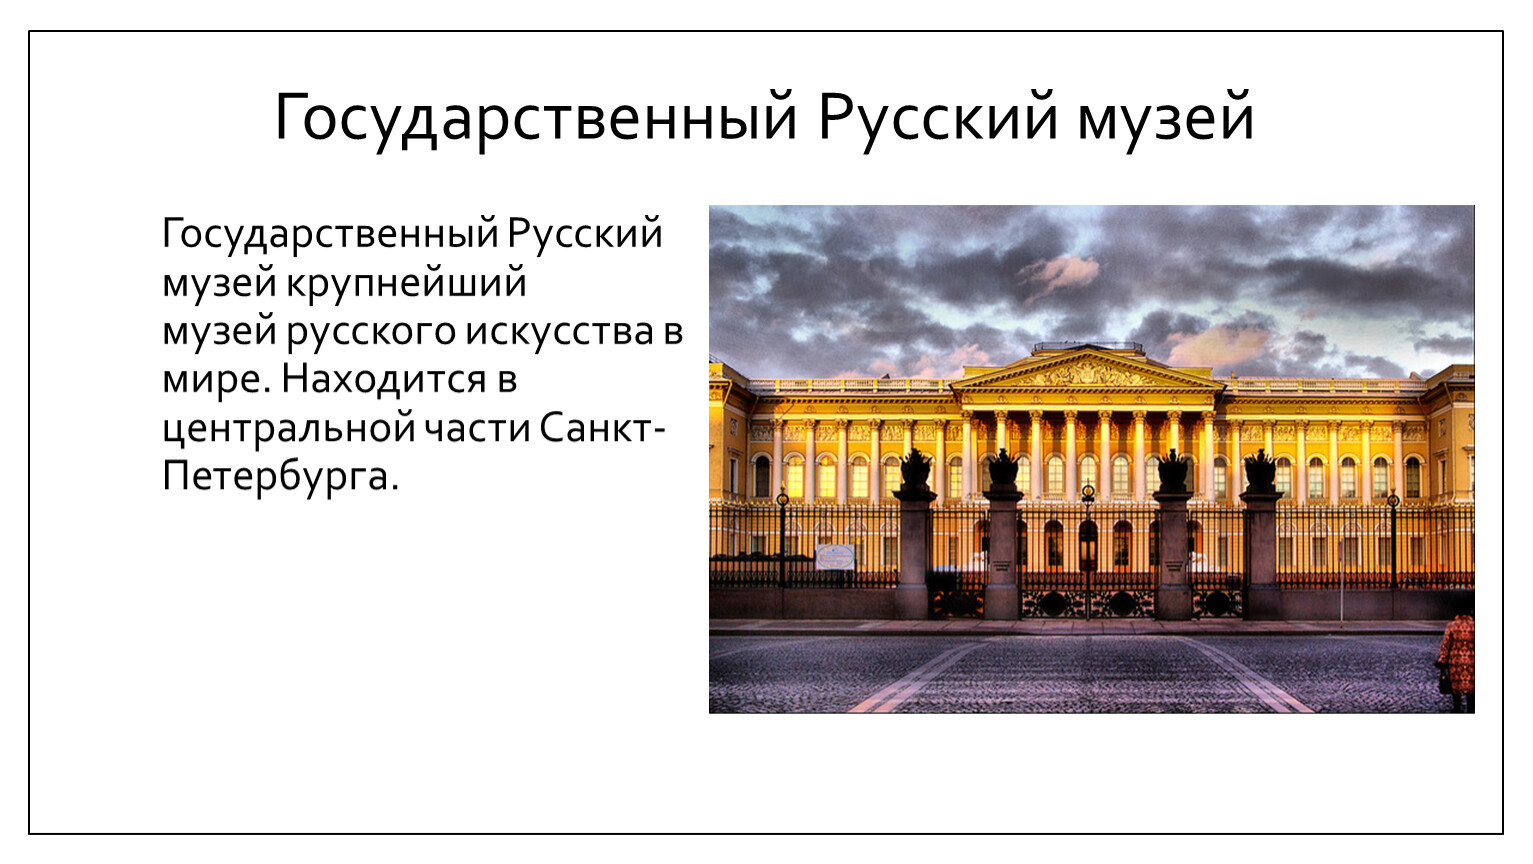 картины с описанием русский музей в санкт петербурге